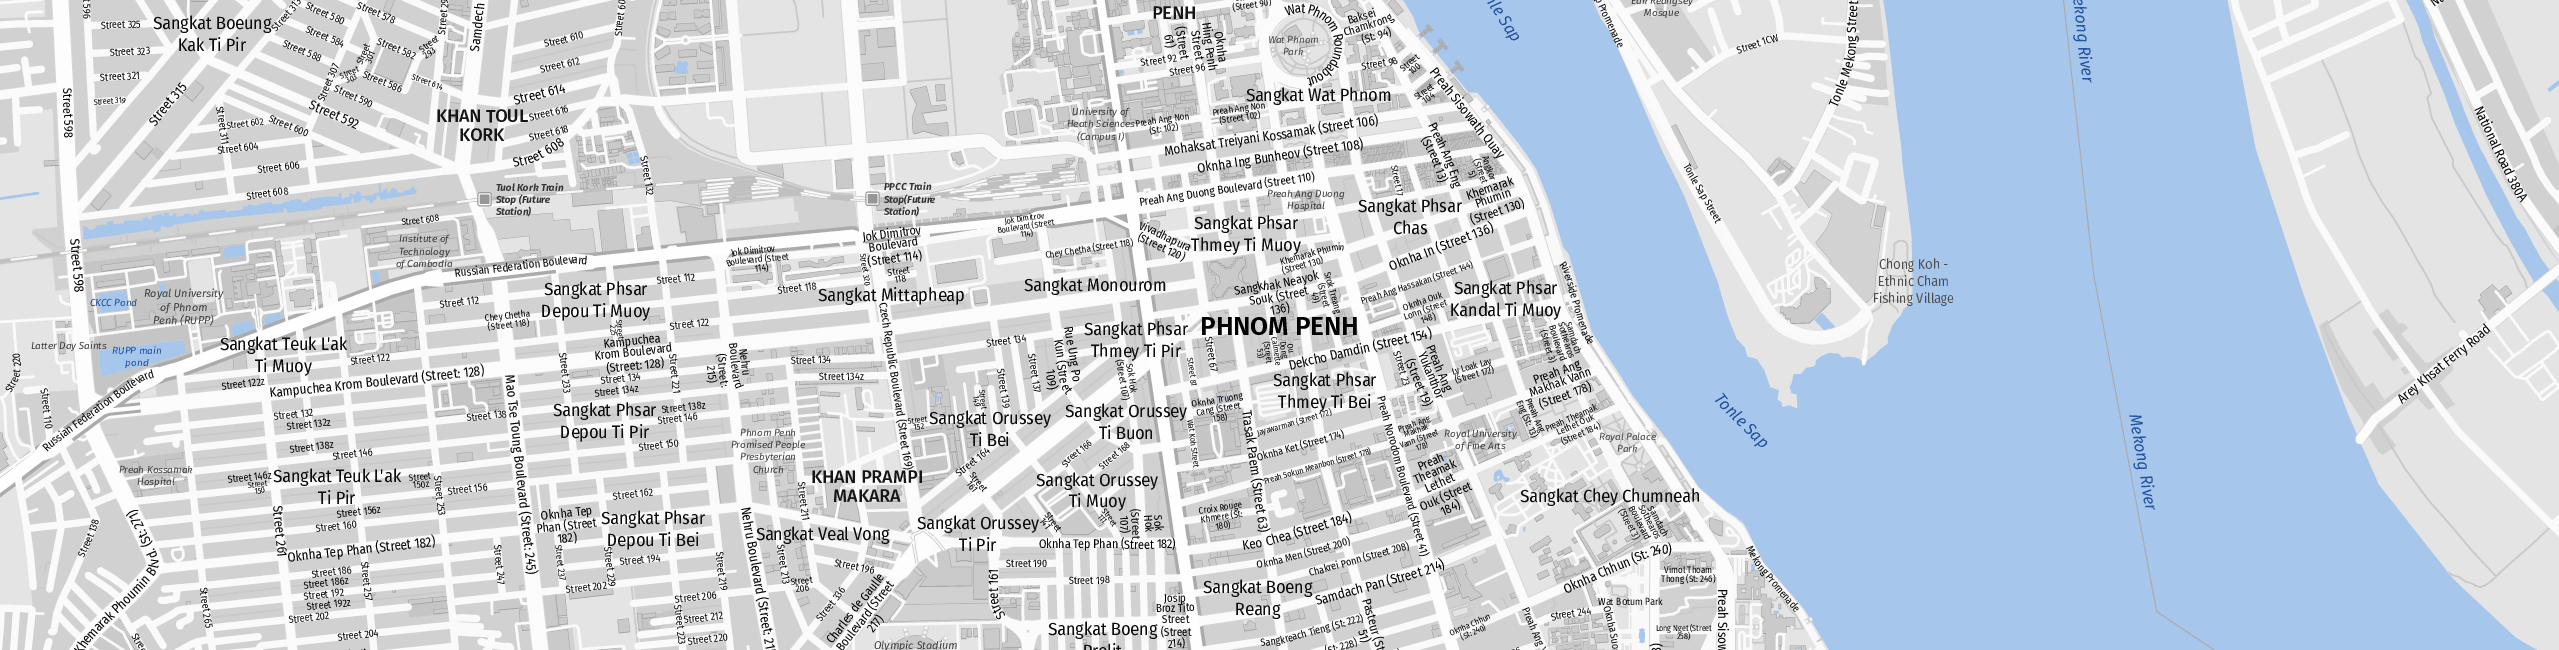 Stadtplan Phnom Penh zum Downloaden.